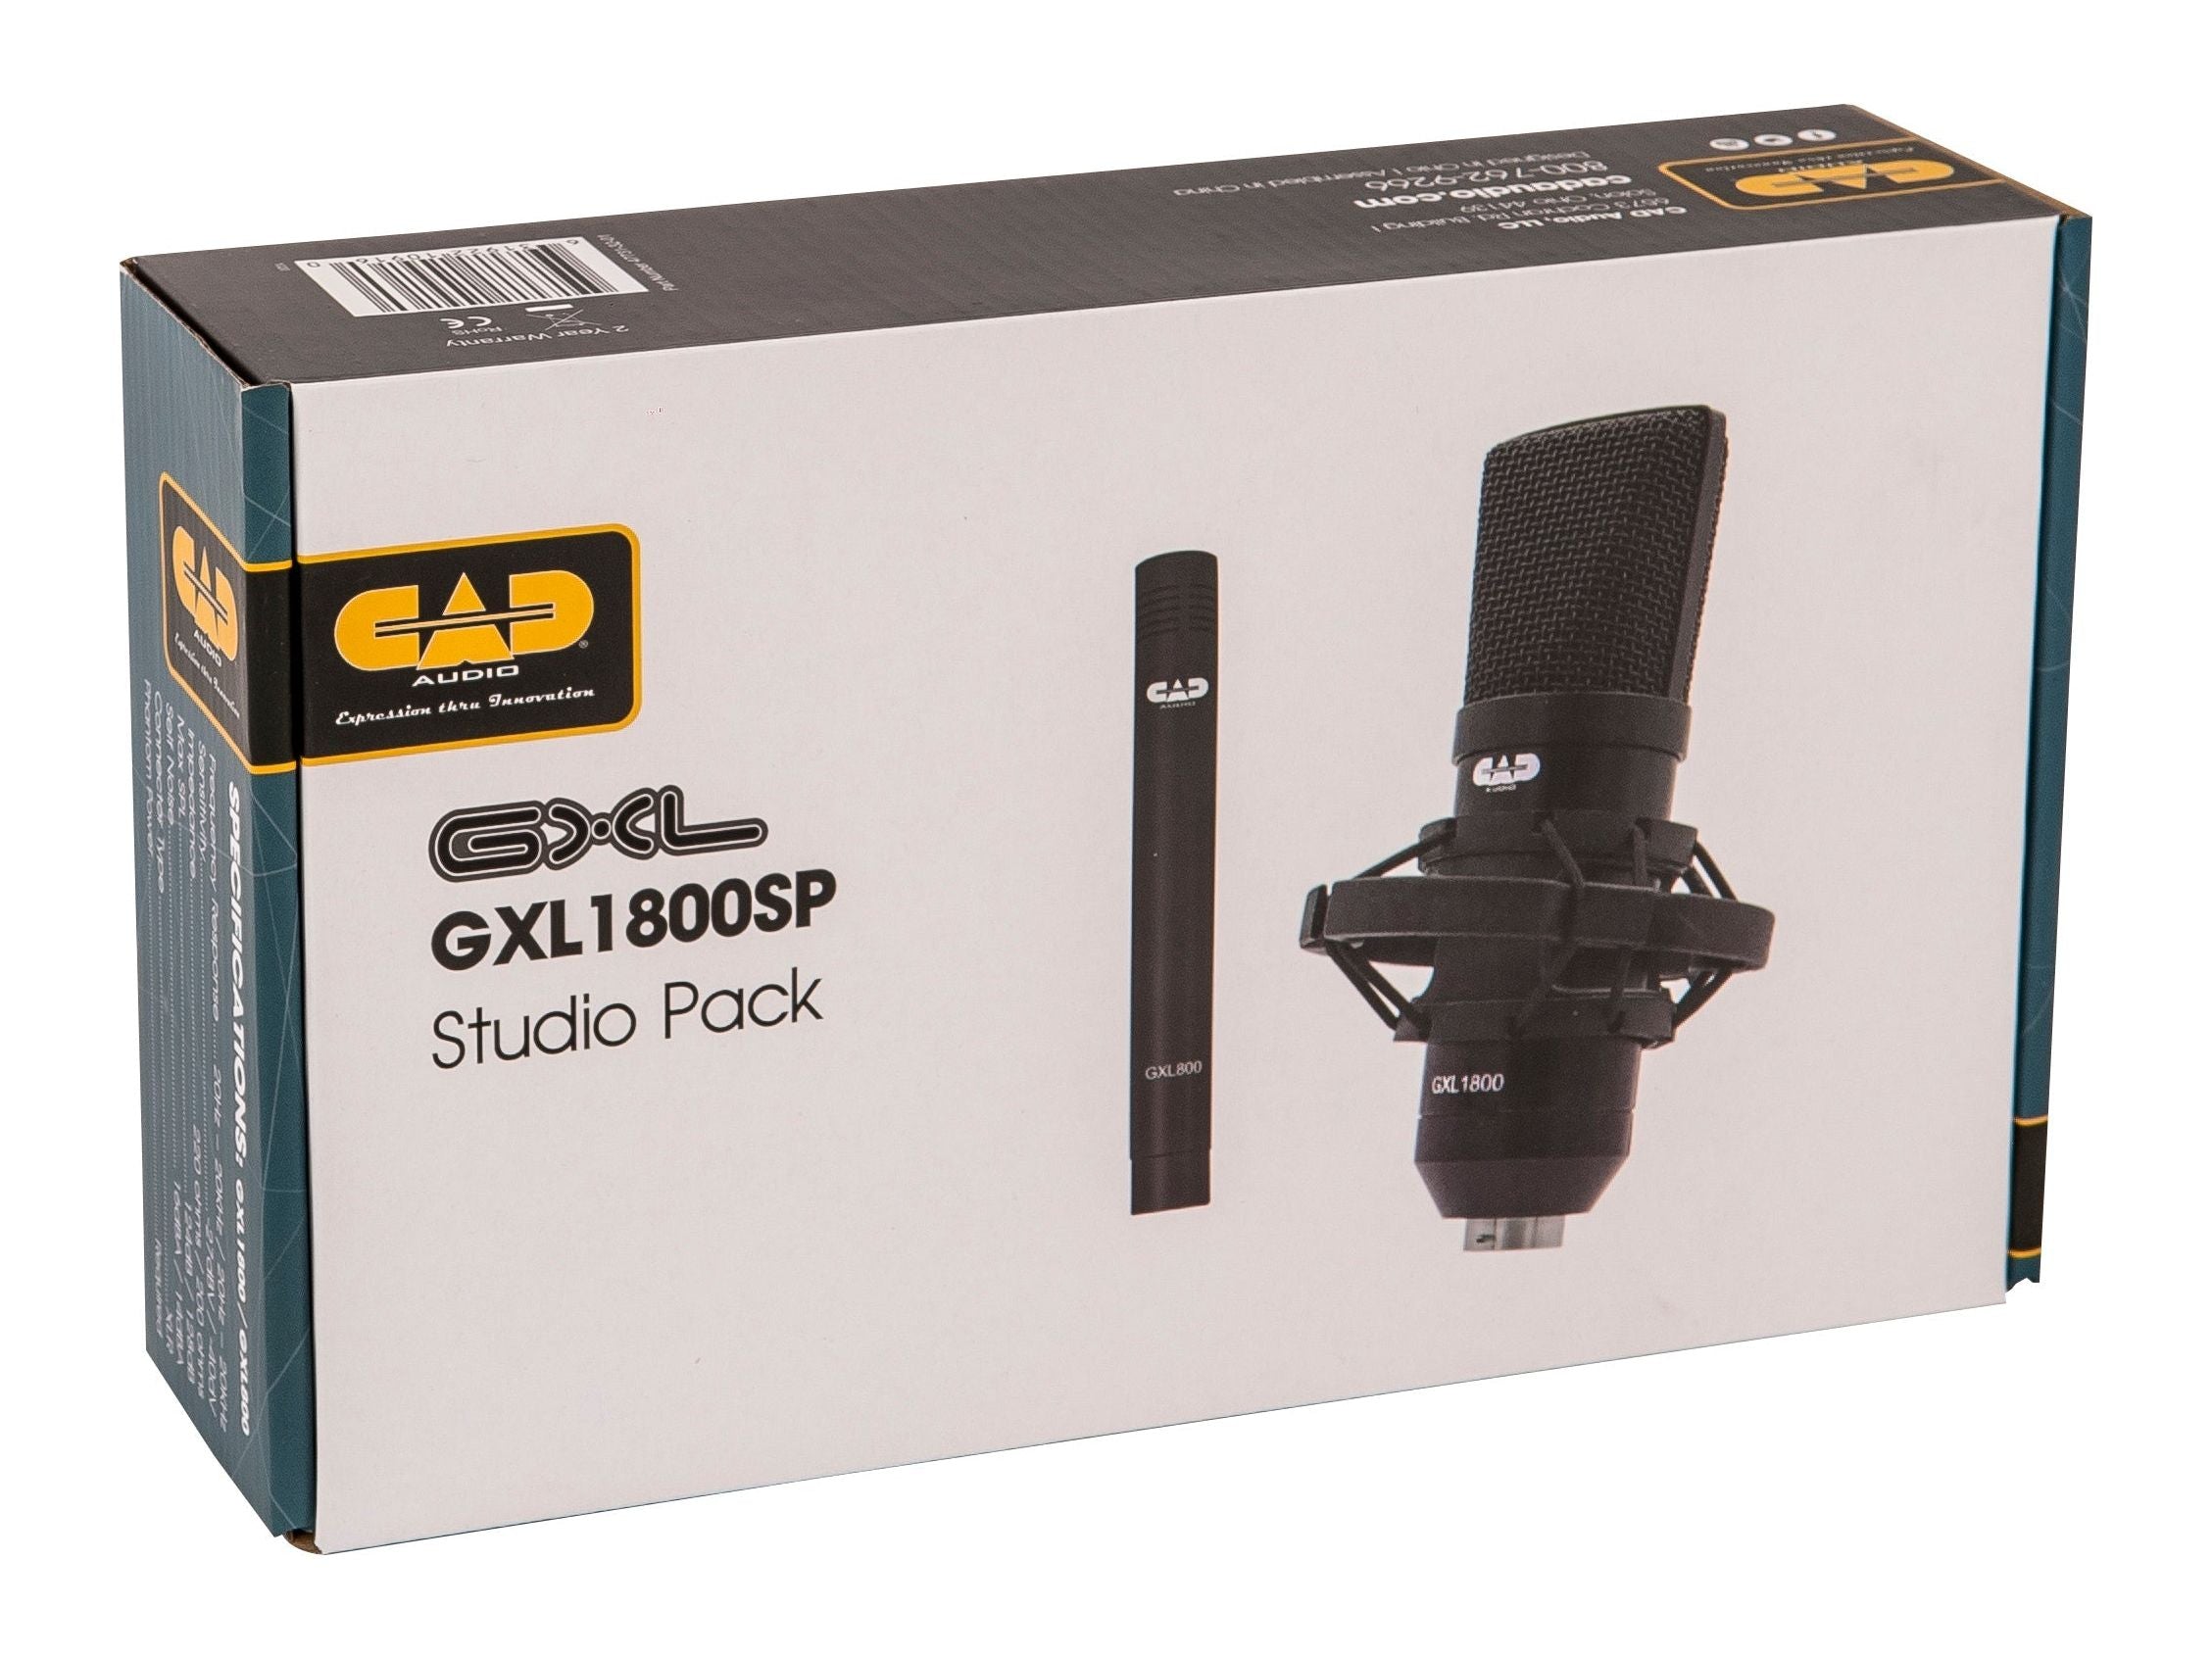 CAD GXL 1800 Studio Pack ~ 2 x Condenser Microphones